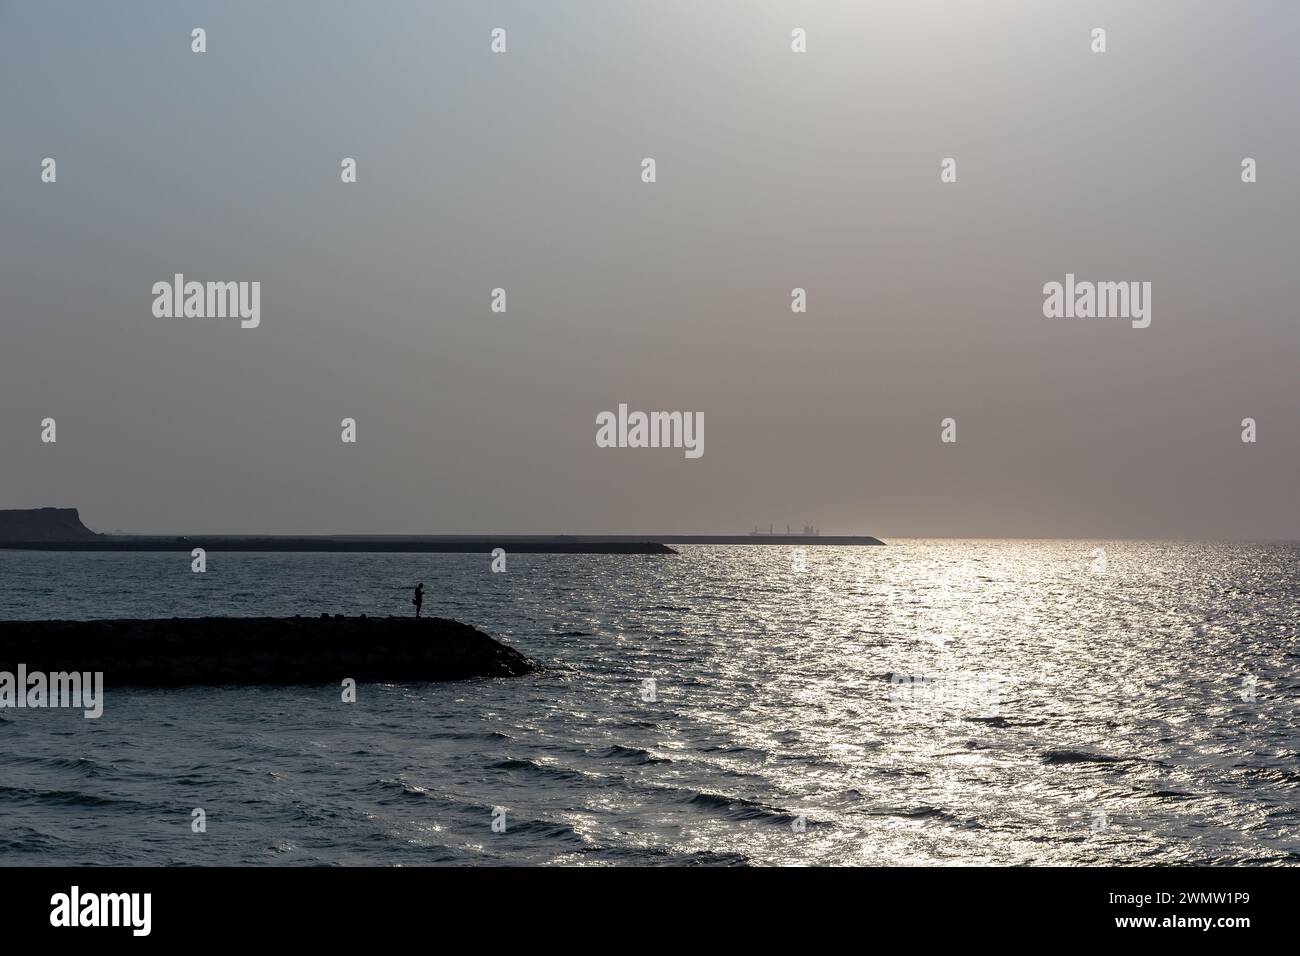 Sagome di frangiflutti di pietra con una persona in piedi alla fine con una dura luce solare che si riflette nelle onde del Golfo, la spiaggia di al Hamriyah negli Emirati Arabi Uniti. Foto Stock